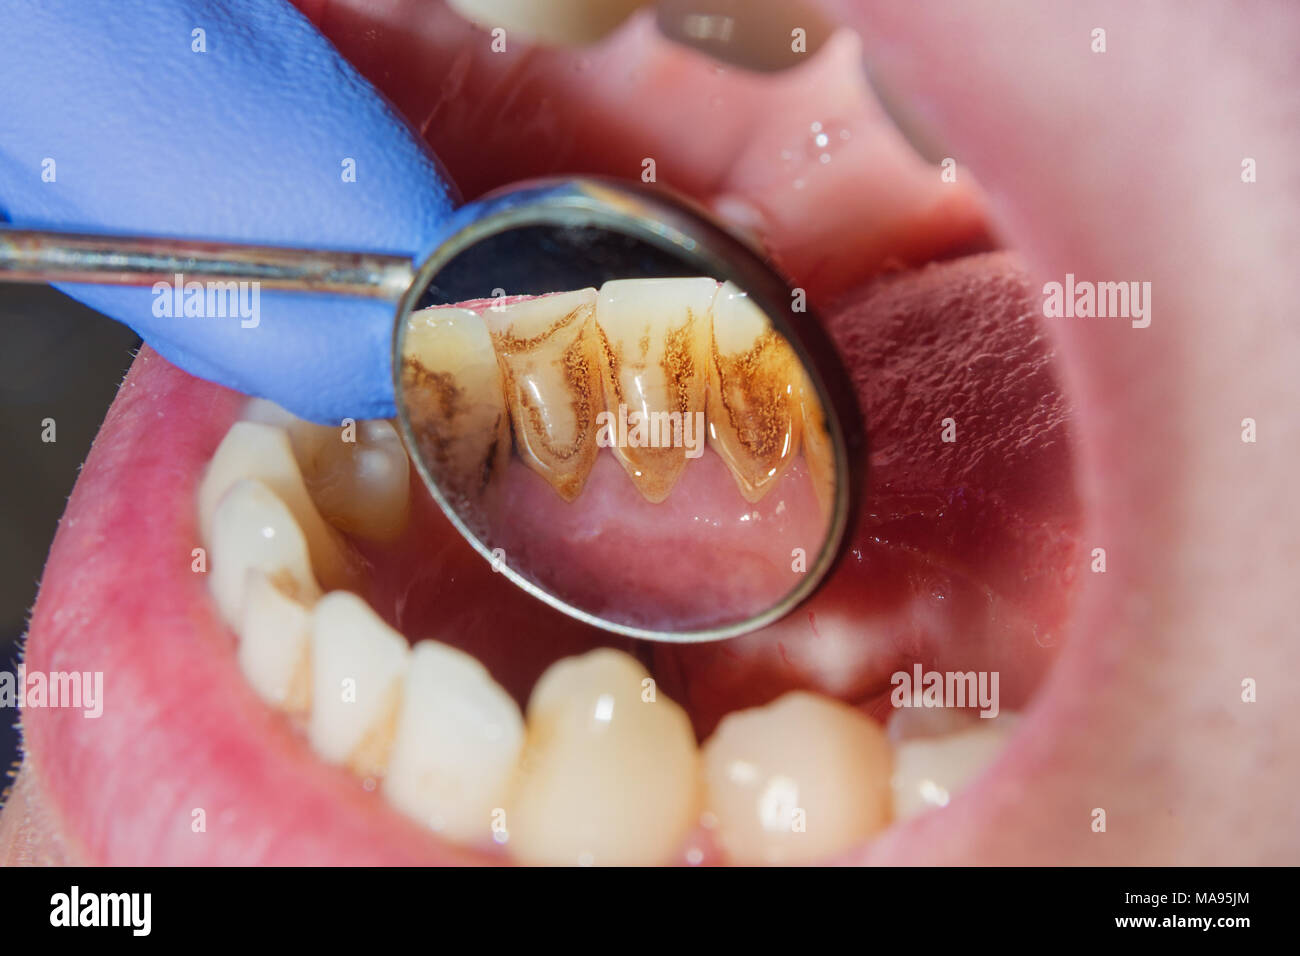 La carie dentaire. Remplissage avec des matériaux composites dentaires utilisant rabbders photopolymères. Le concept de soins dentaires dans une clinique dentaire Banque D'Images